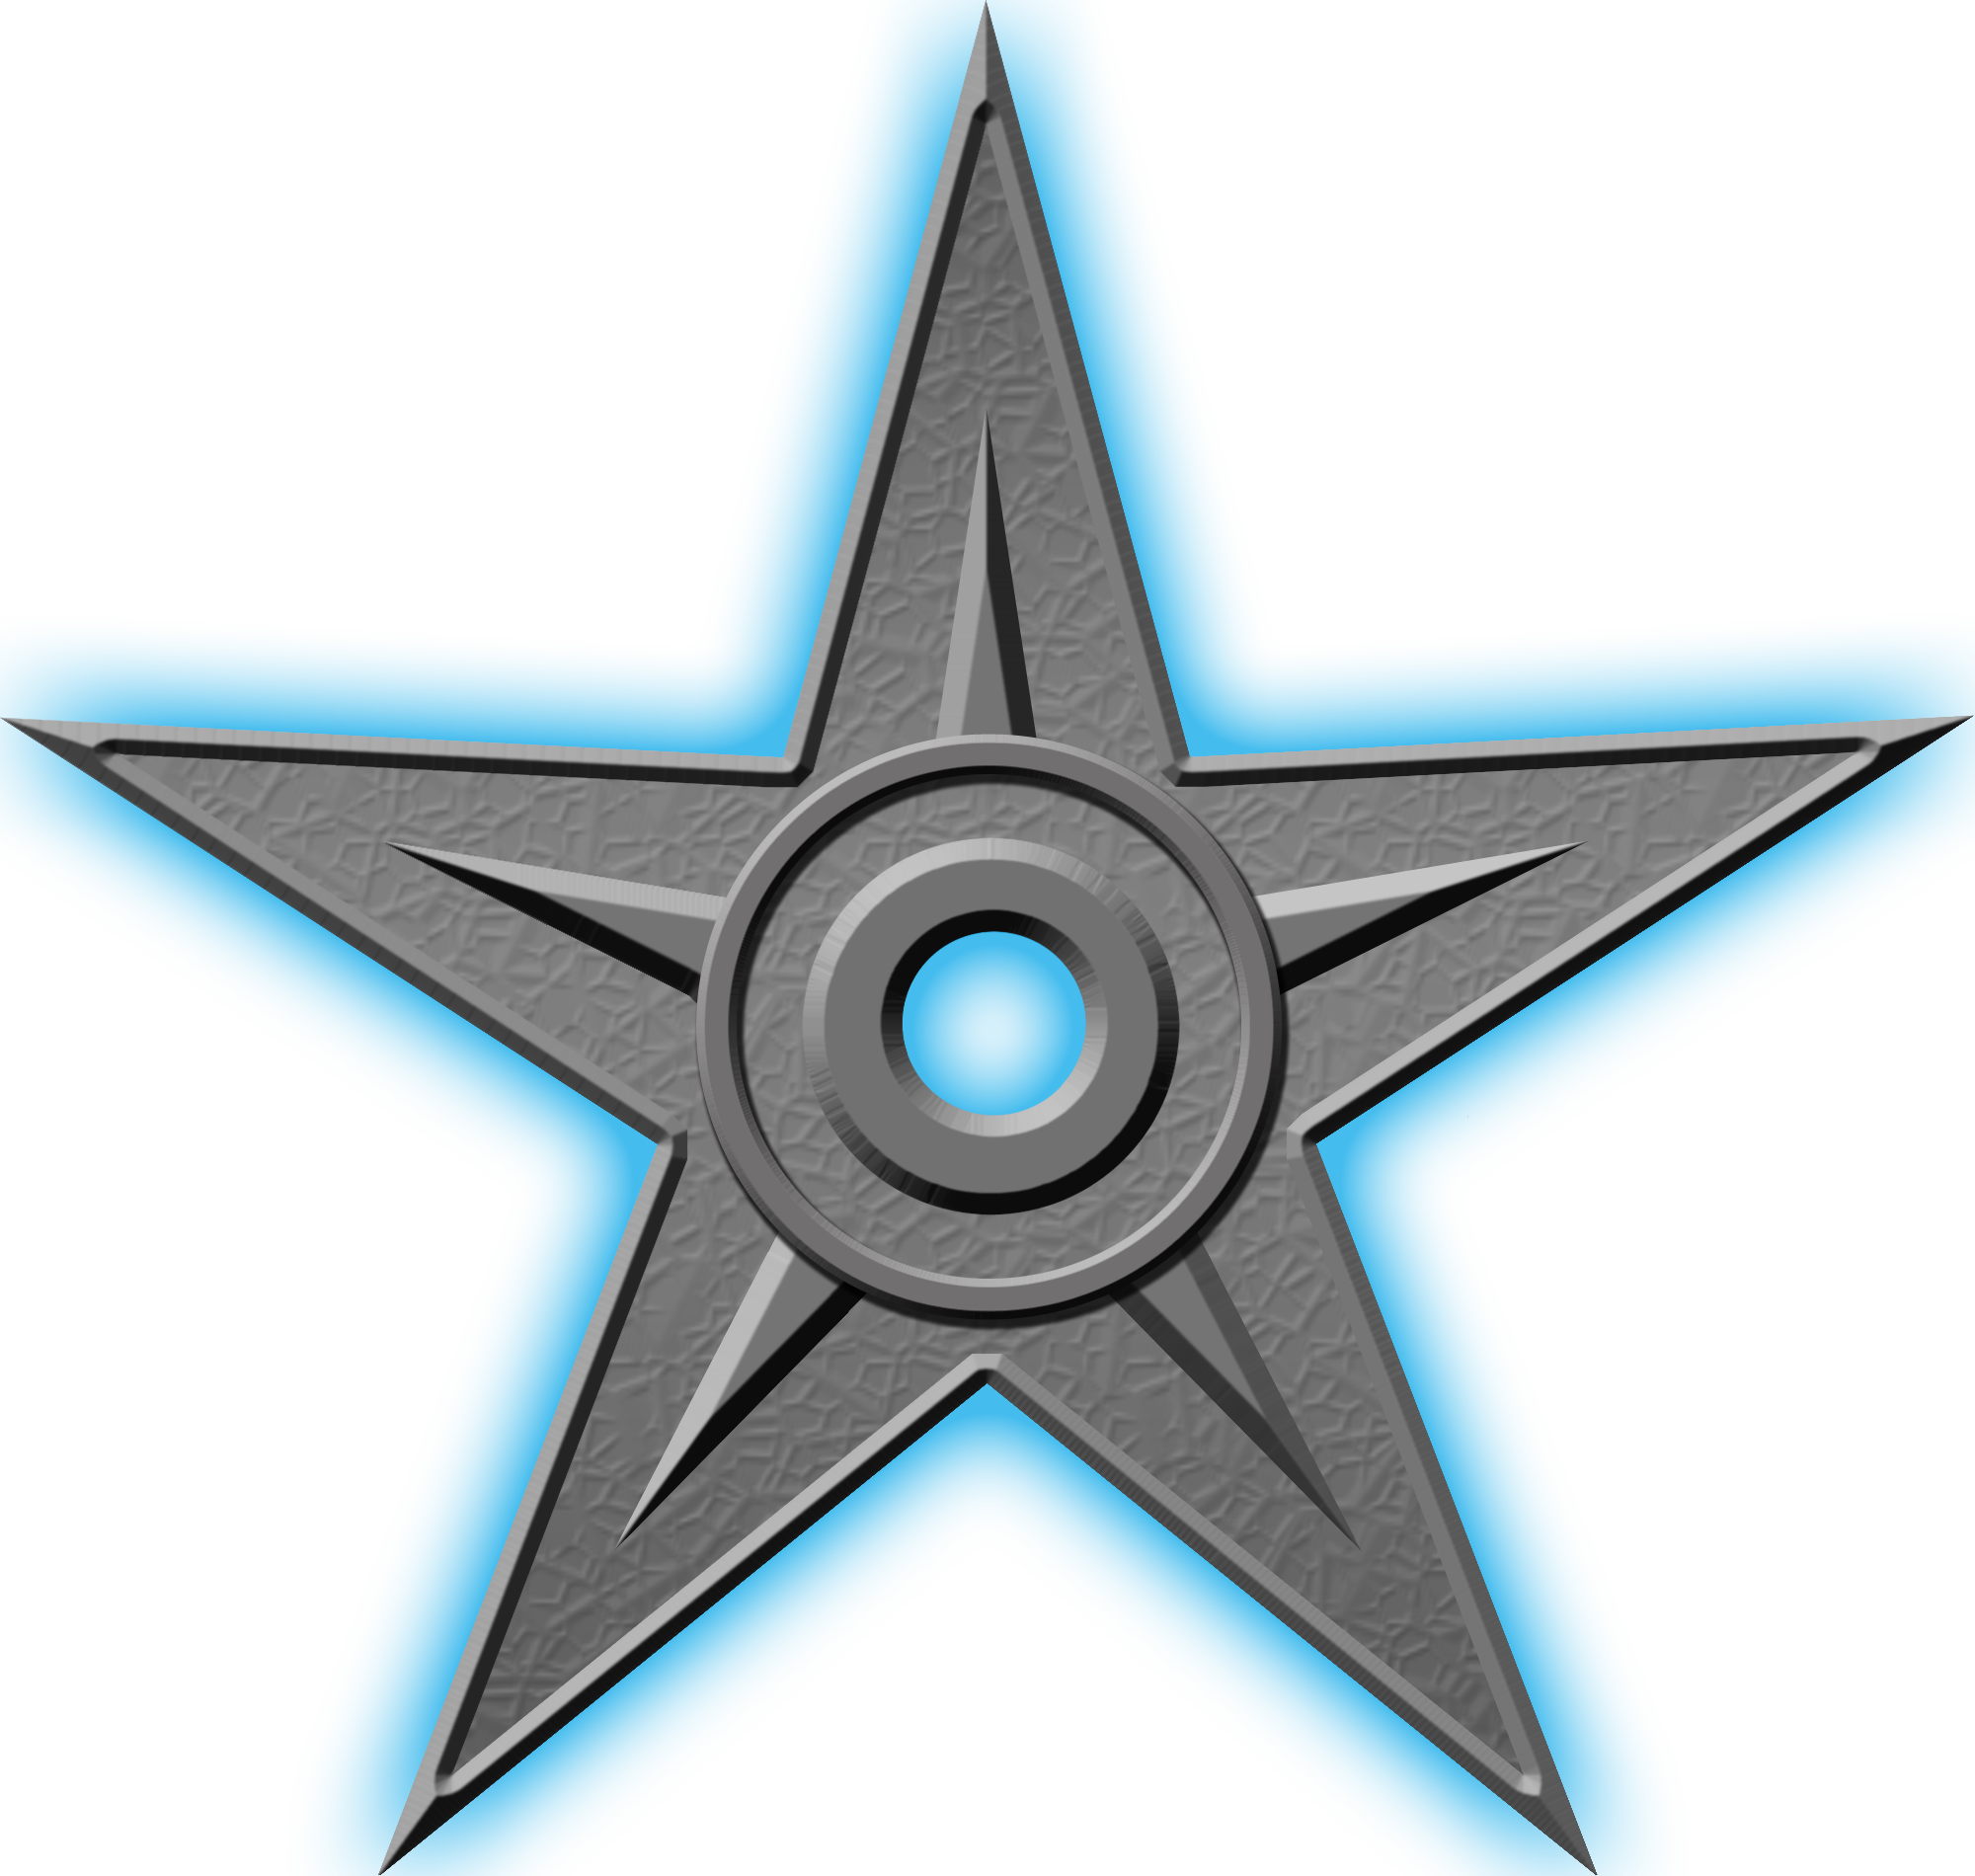 Орден #1 «За выдающиеся заслуги», присвоен участником Арманито за «защиту исторических фактов»